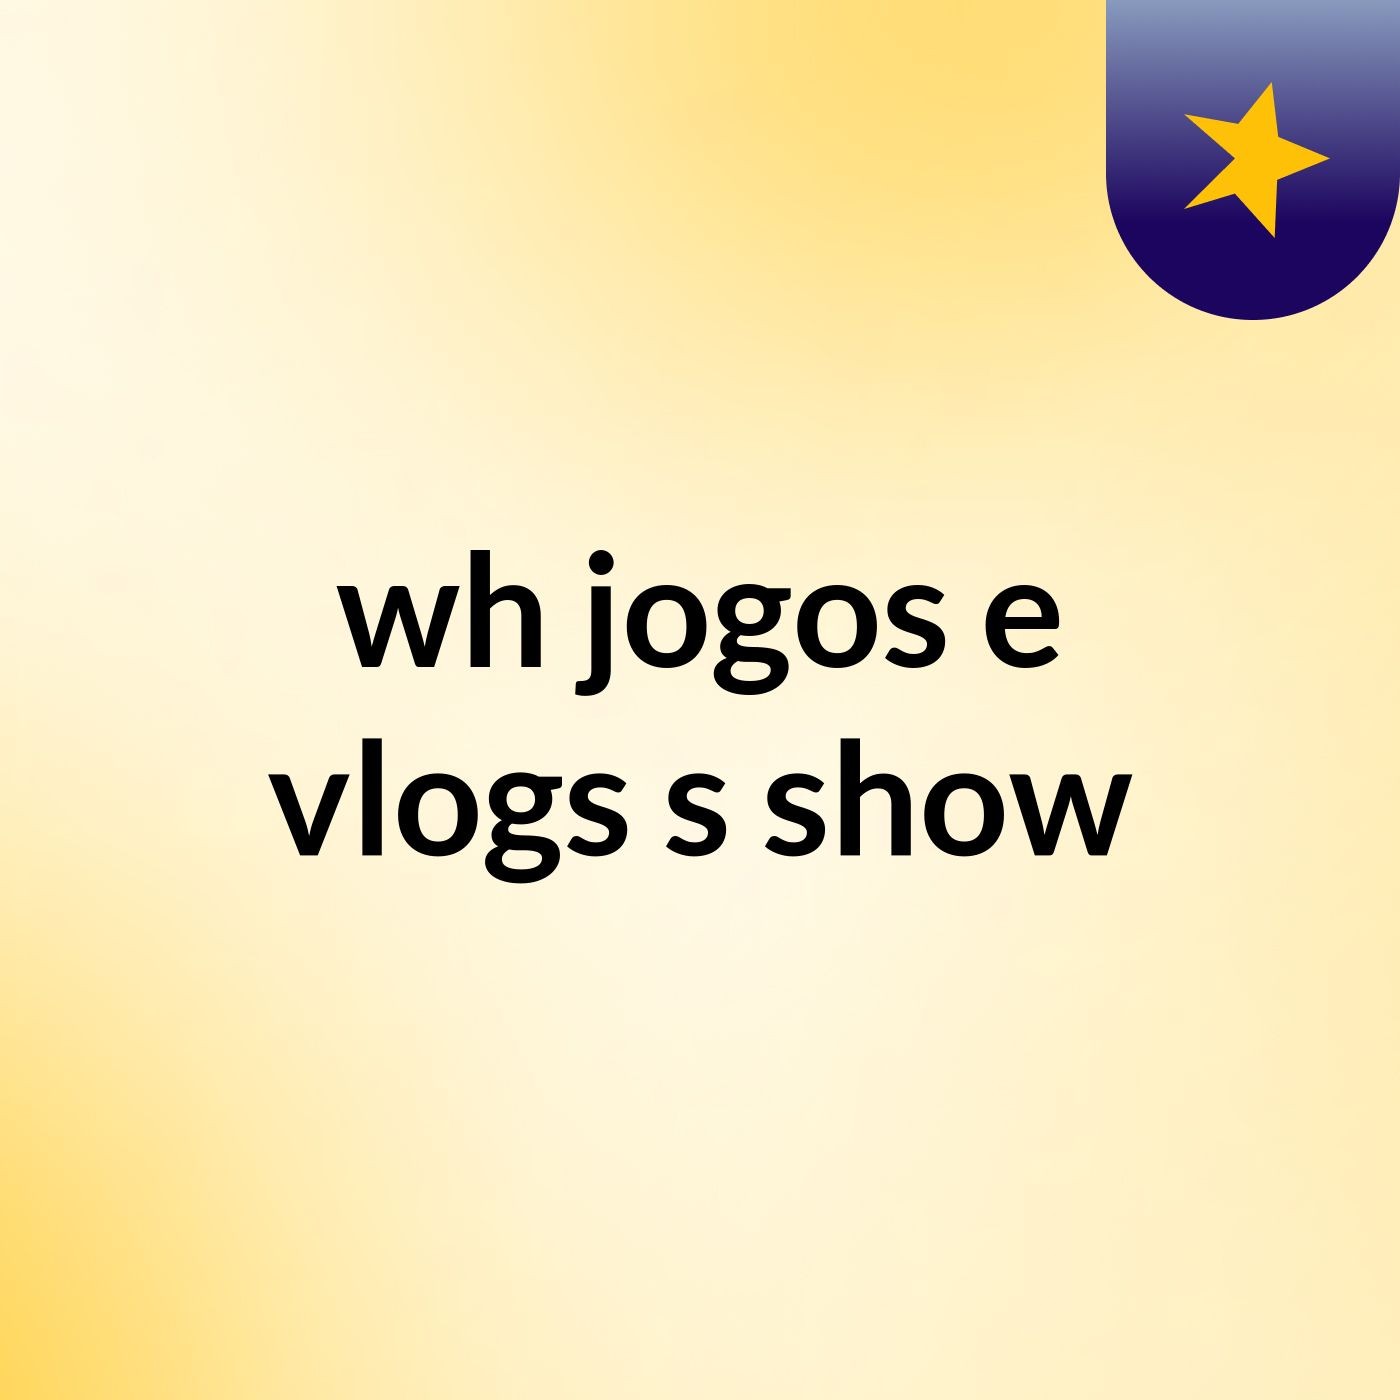 wh jogos e vlogs's show